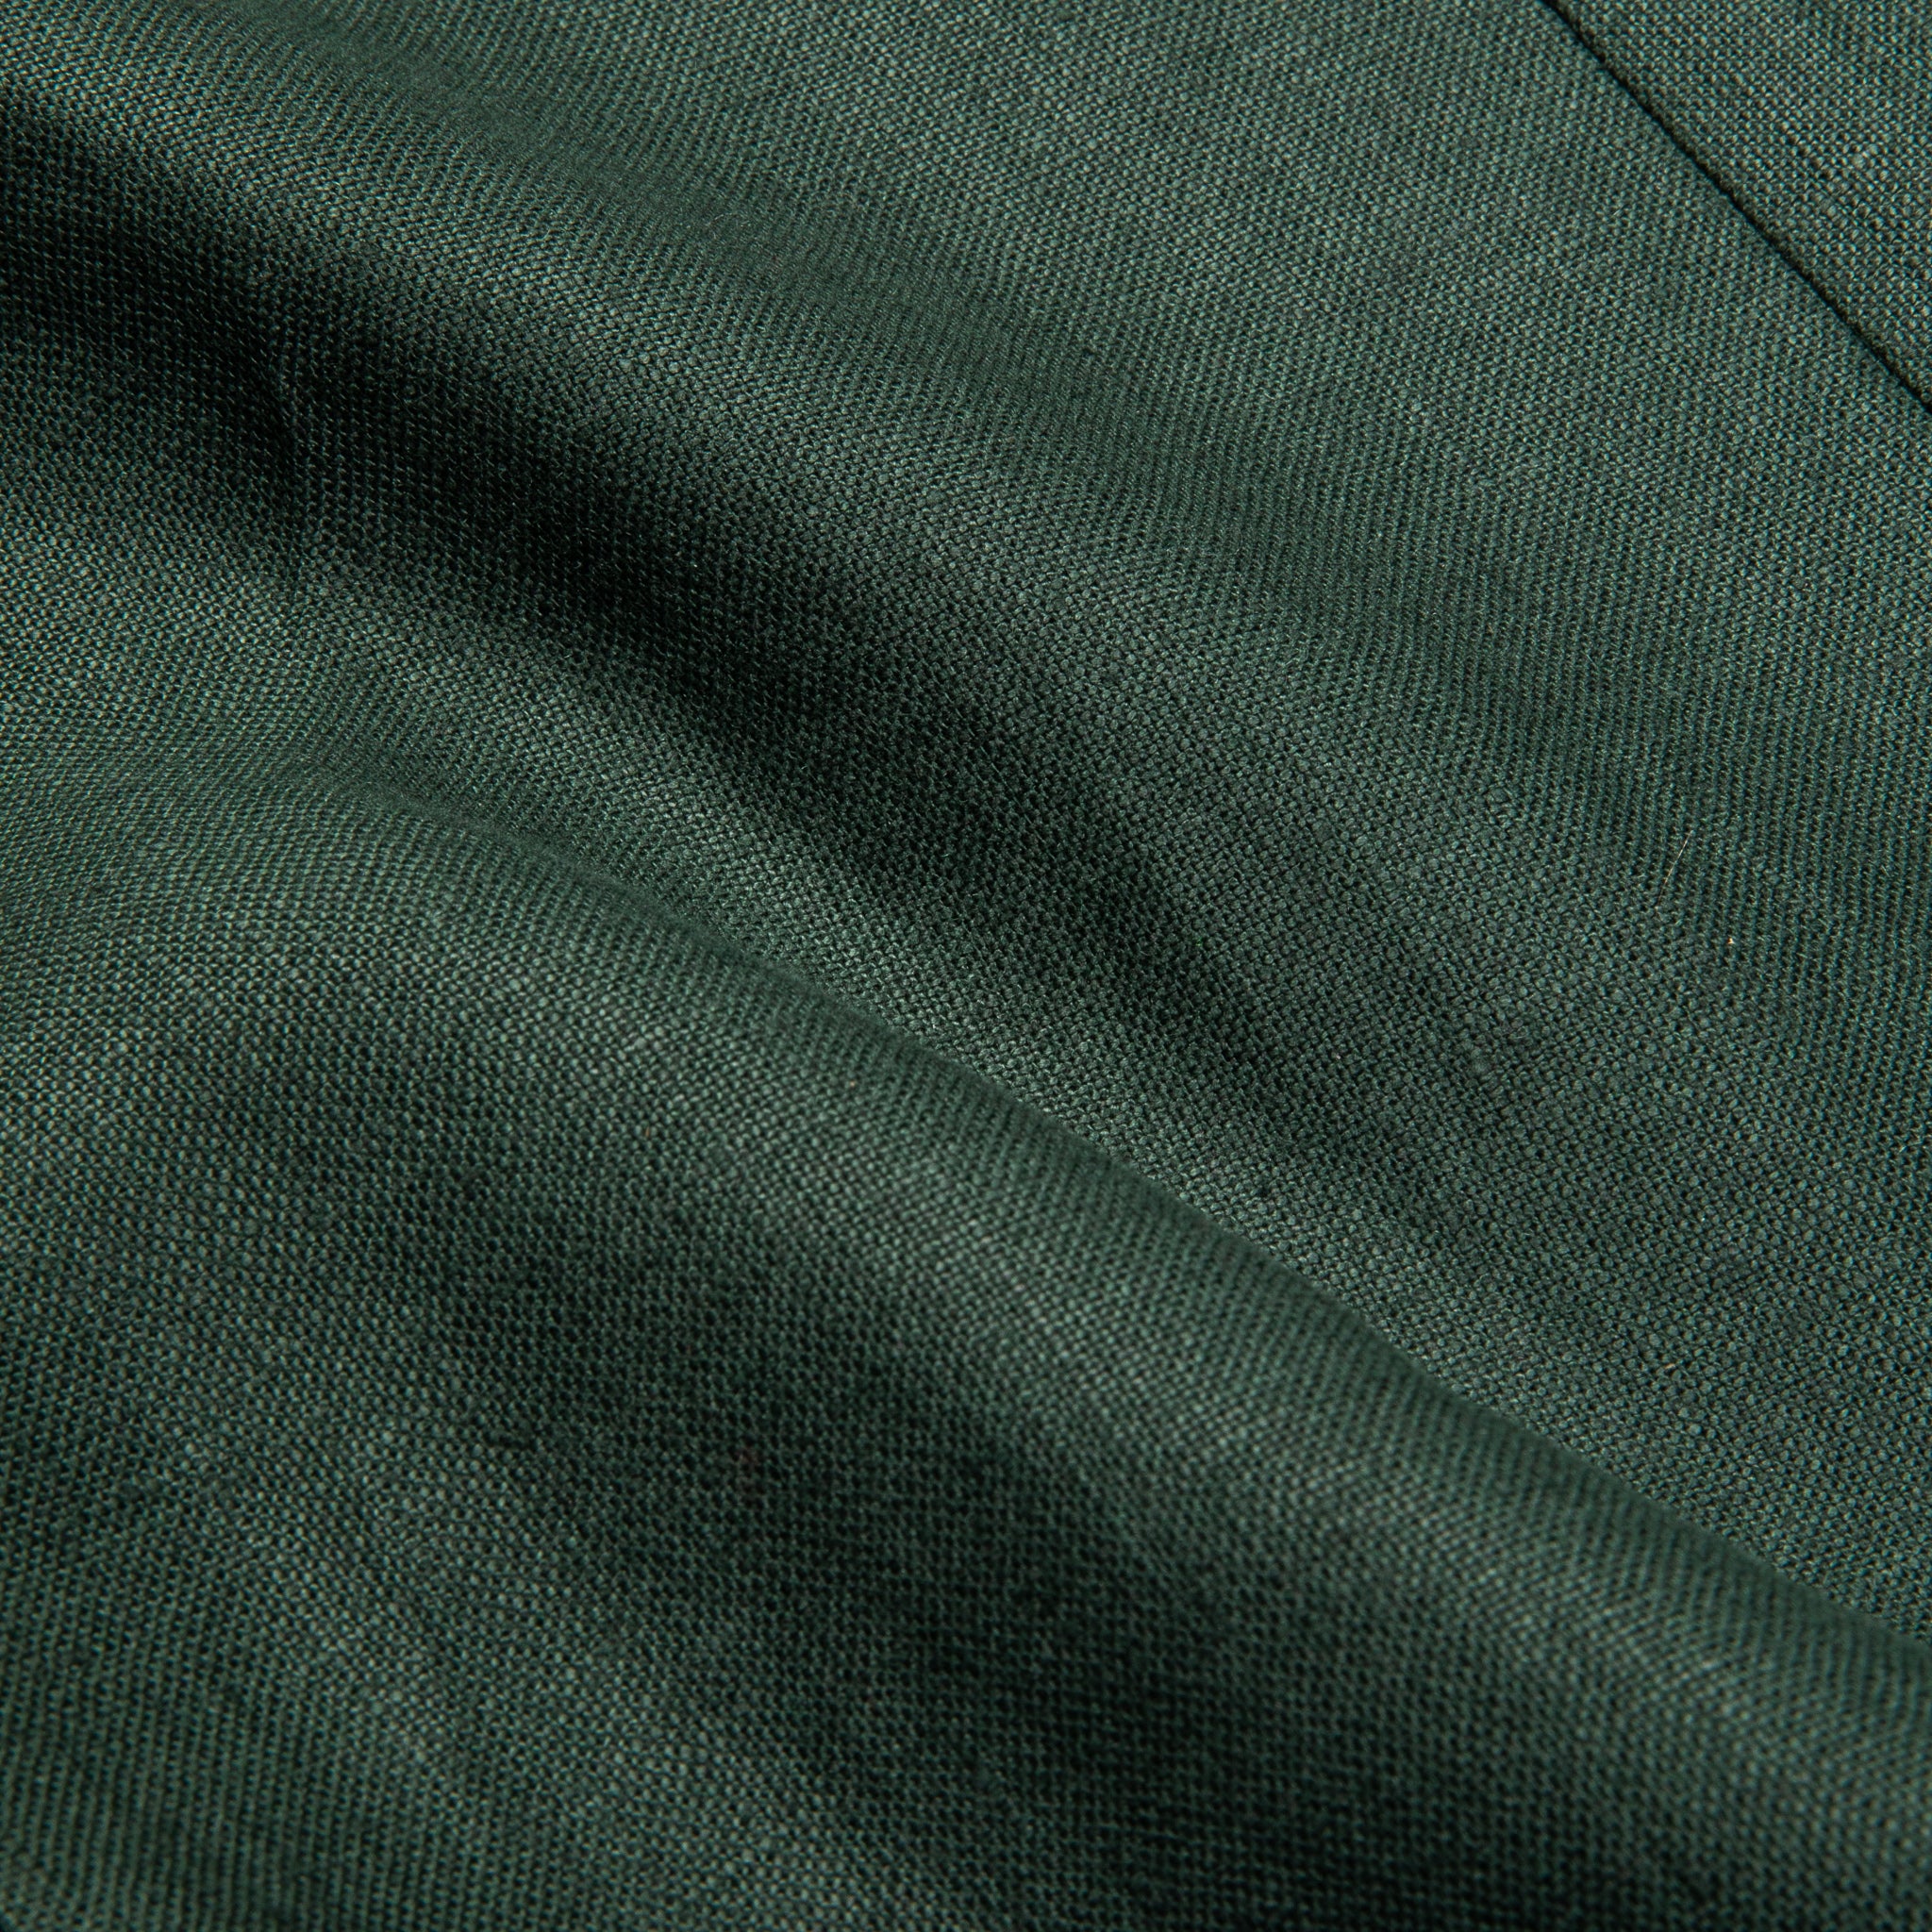 De Petrillo x Frans Boone Capri Jacket Irish Linen Pine Green